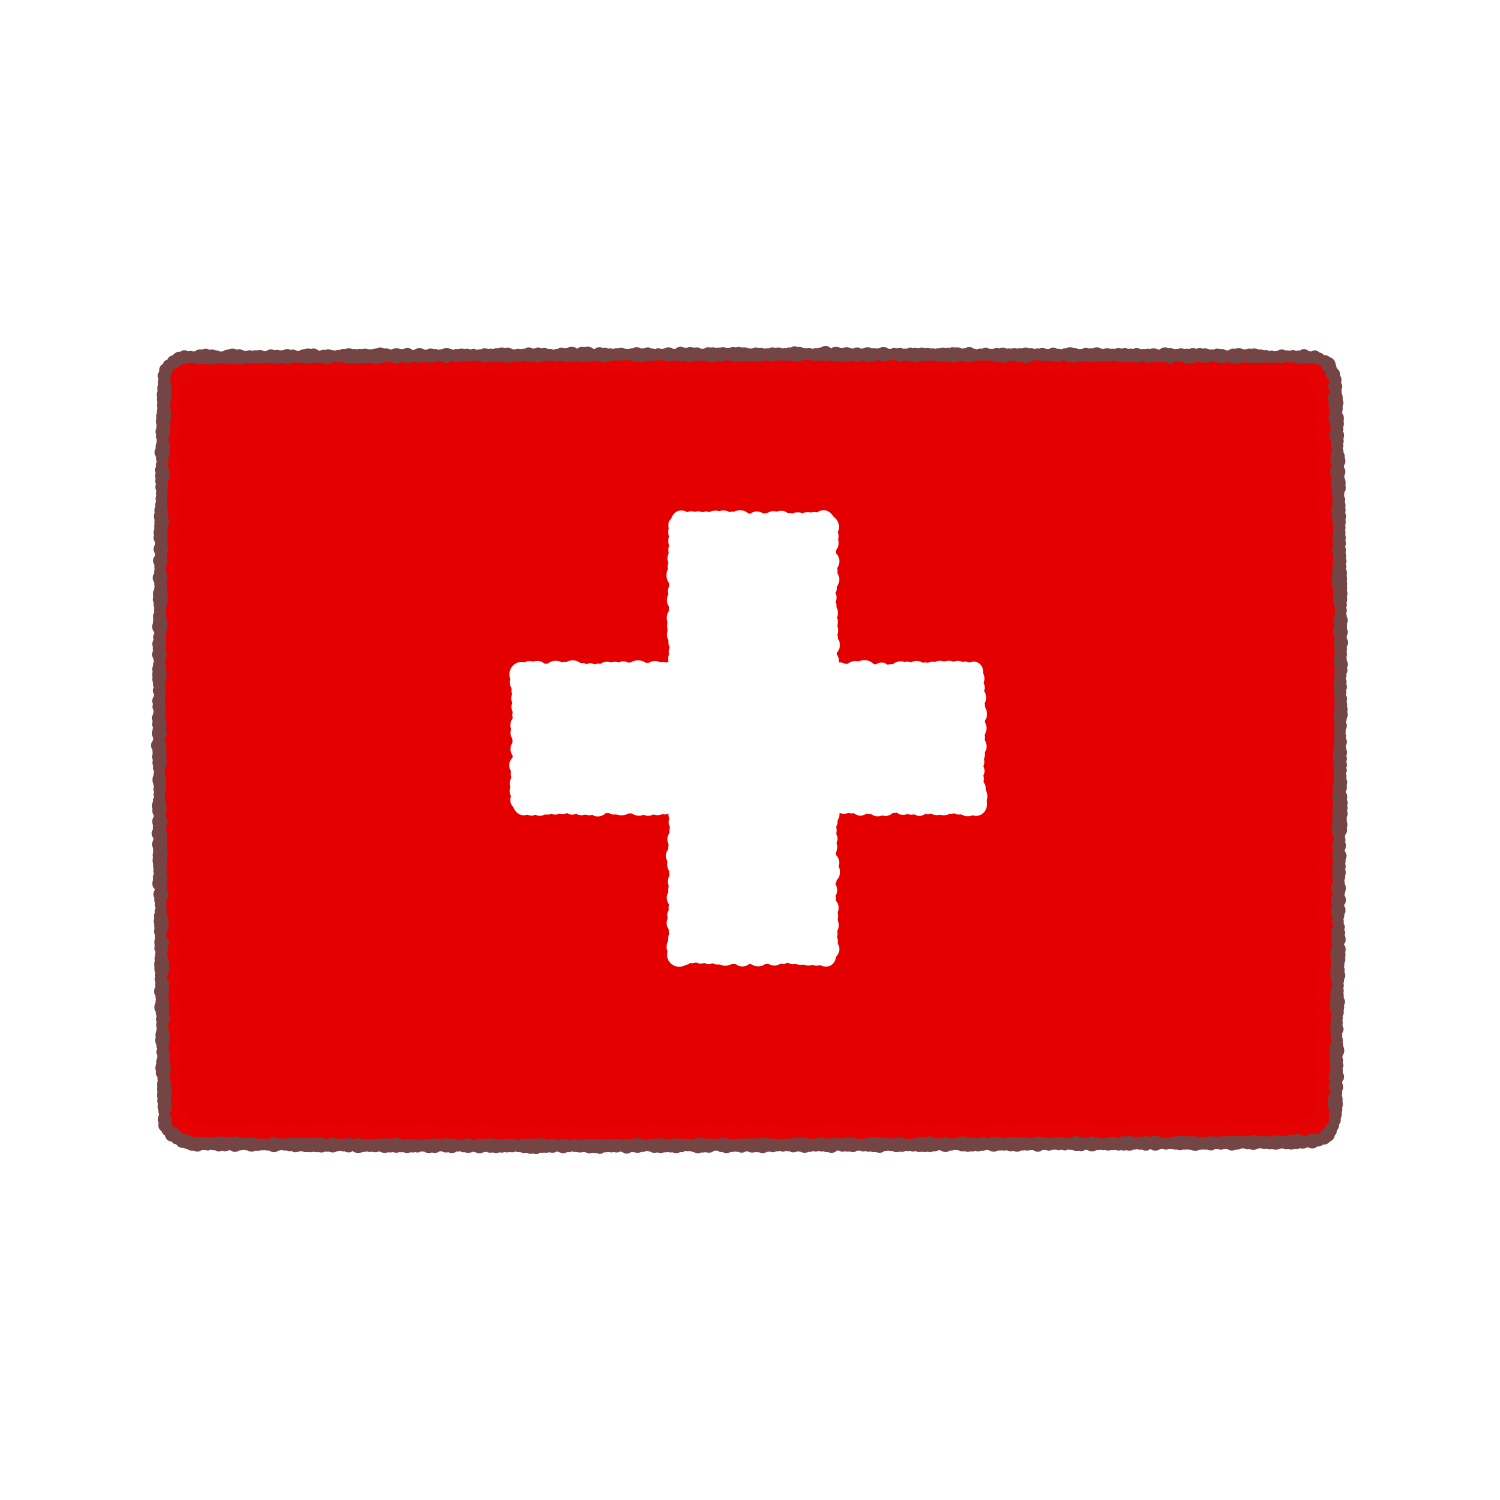 スイス国旗のイラスト